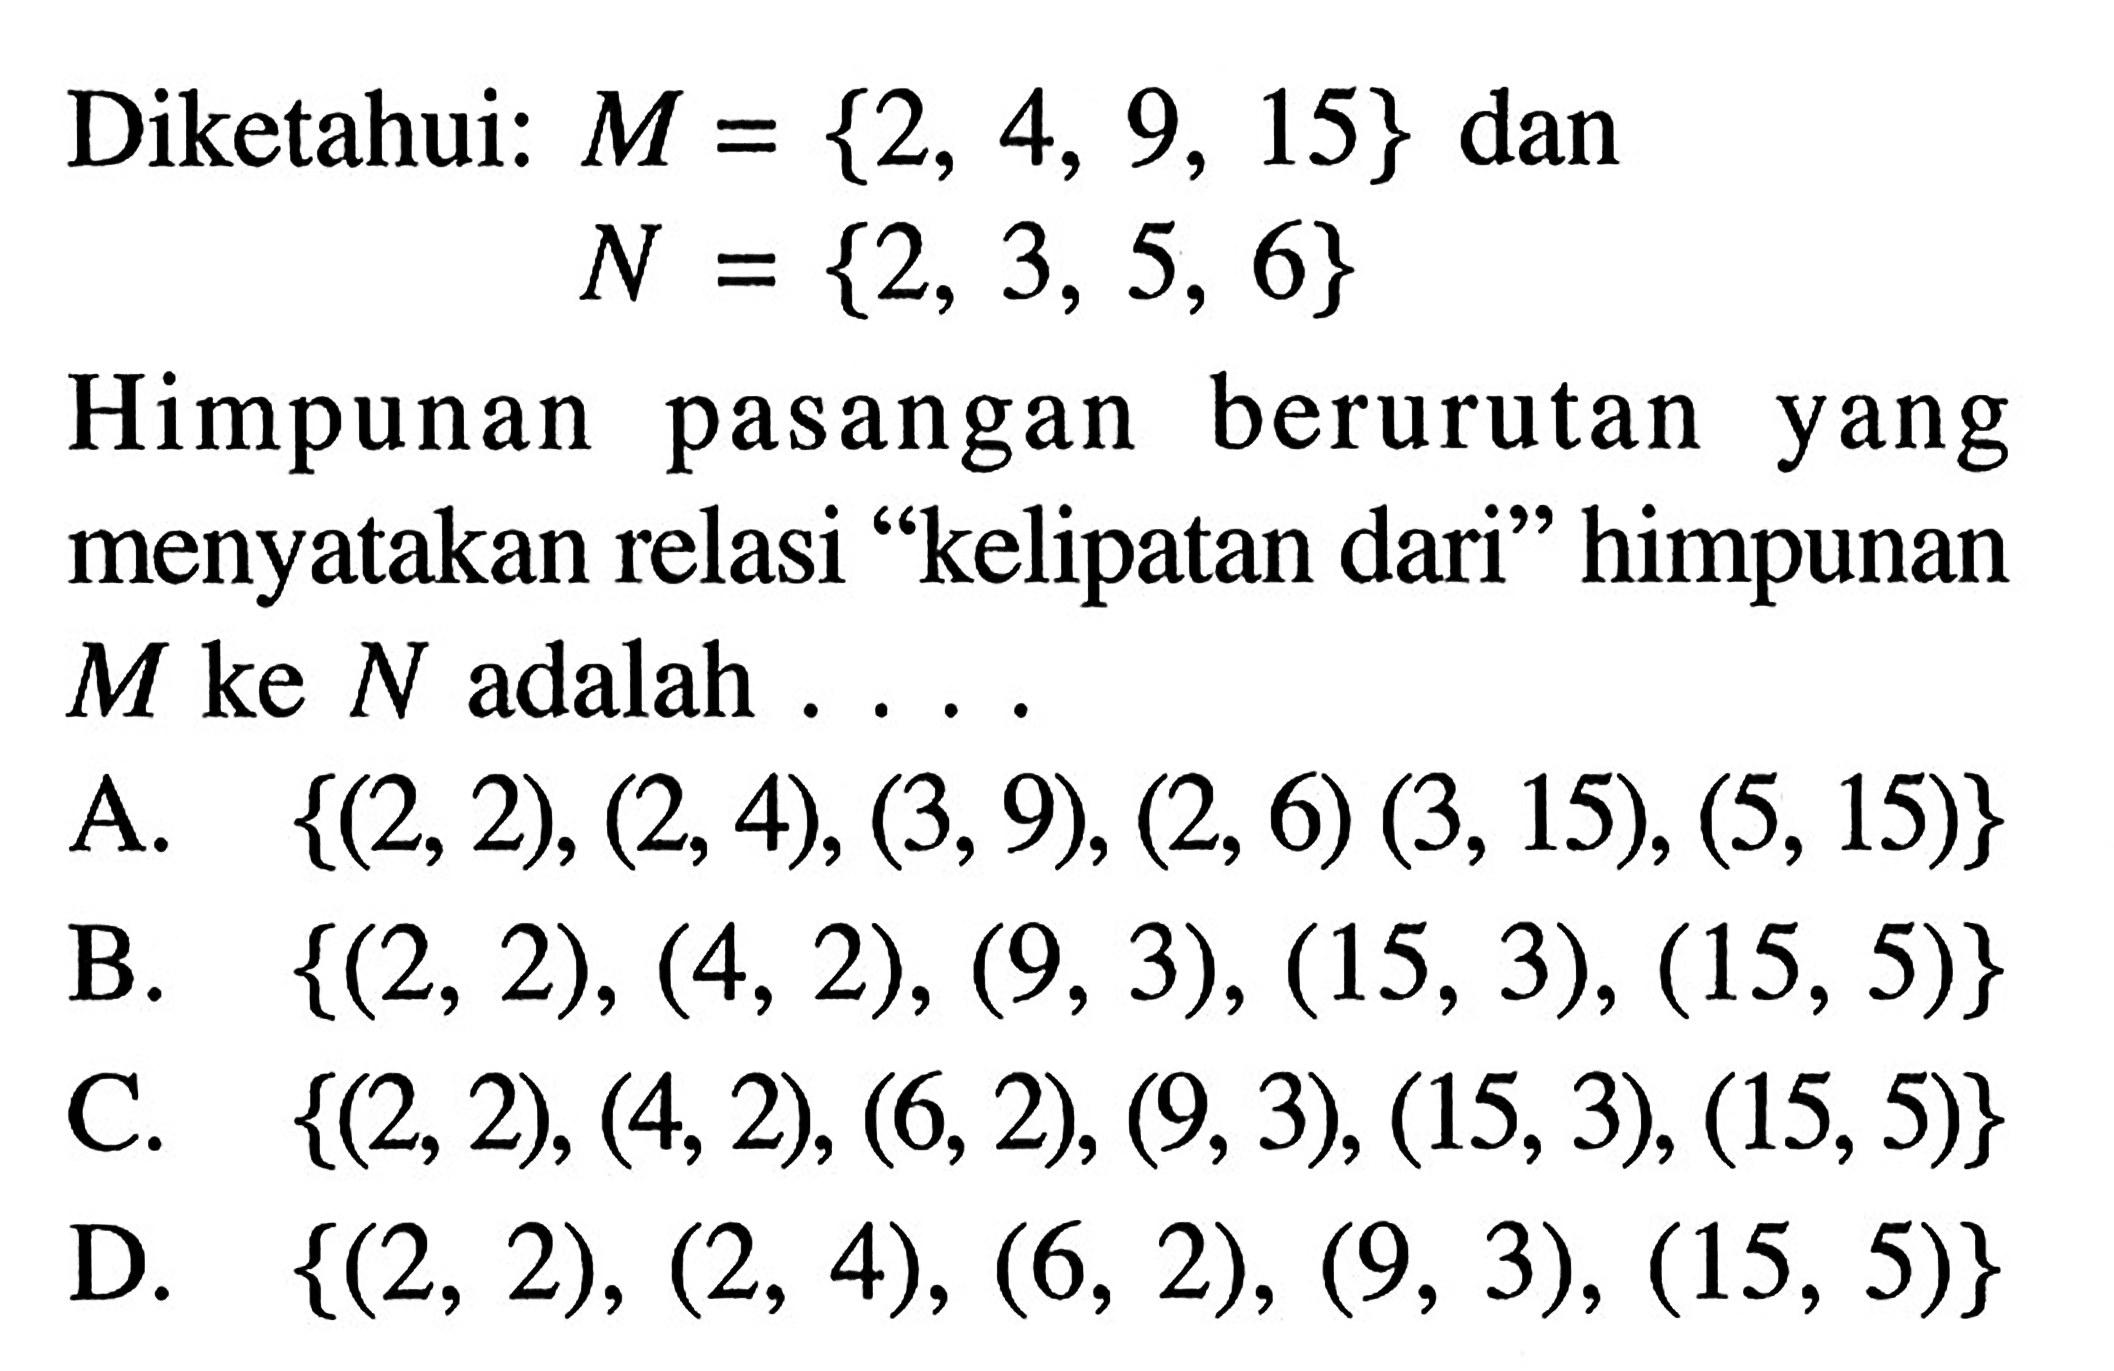 Diketahui: M = {2, 4, 9, 15} dan N= {2, 3, 5, 6} Himpunan pasangan berurutan yang menyatakan relasi "kelipatan dari" himpunan M ke N adalah .... A. {(2,2),(2,4)(3,9),(2,6),(3,15),(5,15)} B. {(2,2),(4,2),(9,3),(15,3),(15,5)} C. {(2,2),(4,2),(6,2),(9,3),(15,3),(15,5)} D. {(2,2),(2,4),(6,2),(9,3),(15,5)}